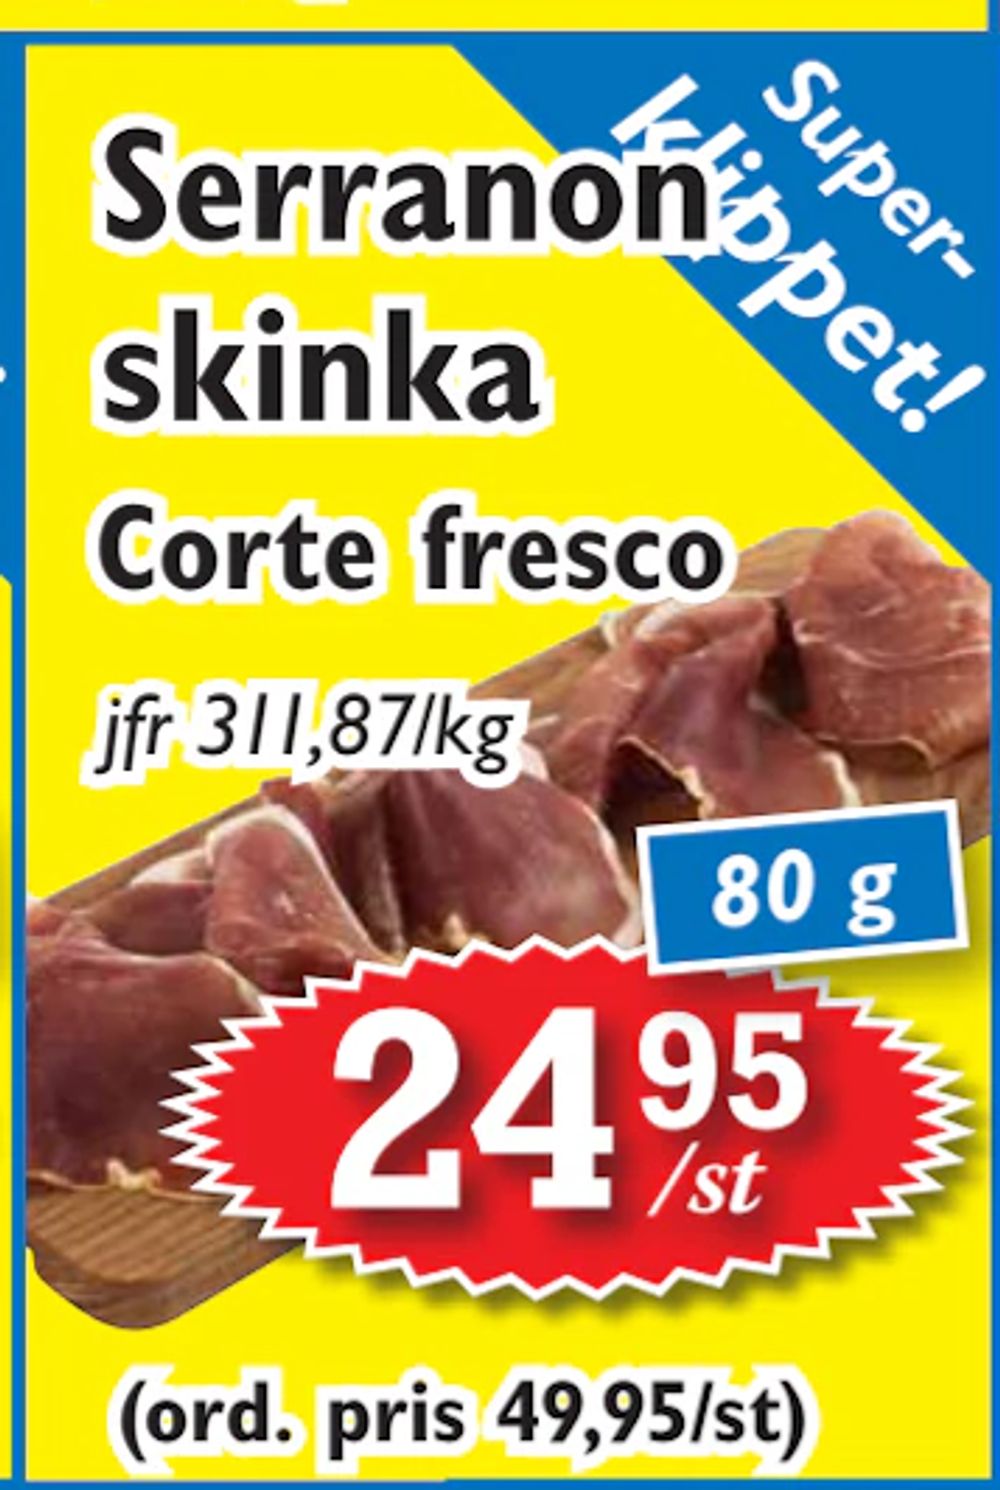 Erbjudanden på Serranon skinka från T-jarlen för 24,95 kr